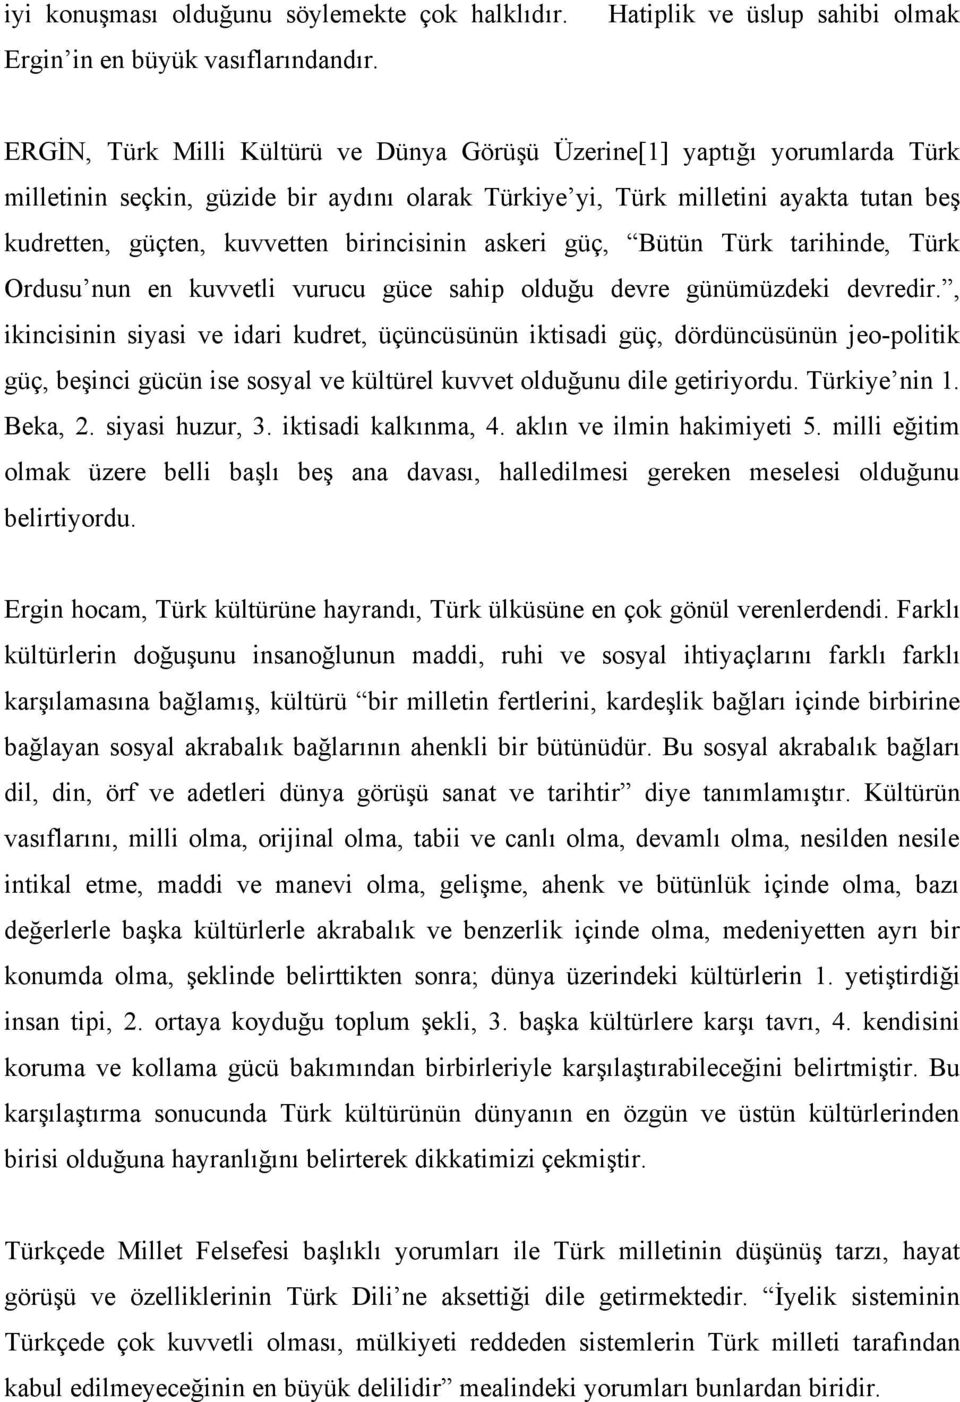 kudretten, güçten, kuvvetten birincisinin askeri güç, Bütün Türk tarihinde, Türk Ordusu nun en kuvvetli vurucu güce sahip olduğu devre günümüzdeki devredir.